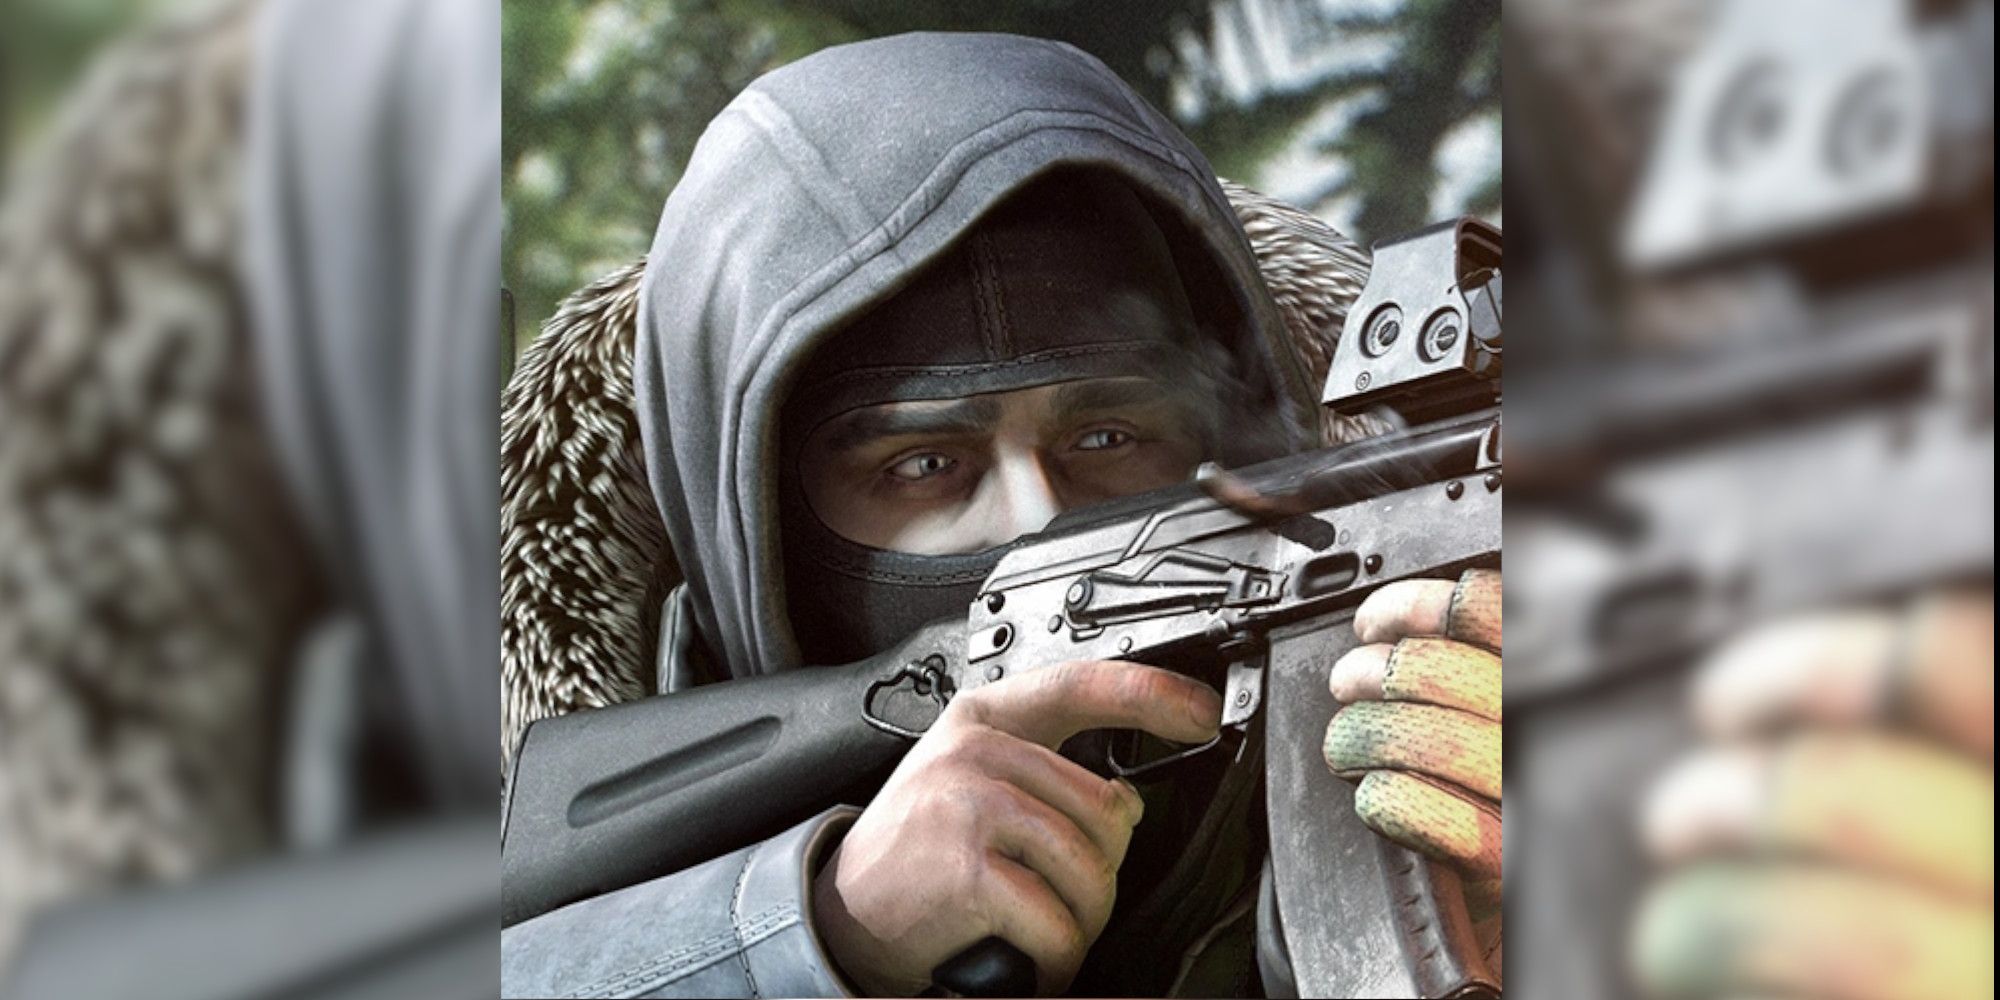 Shturman takes aim with an AK-103